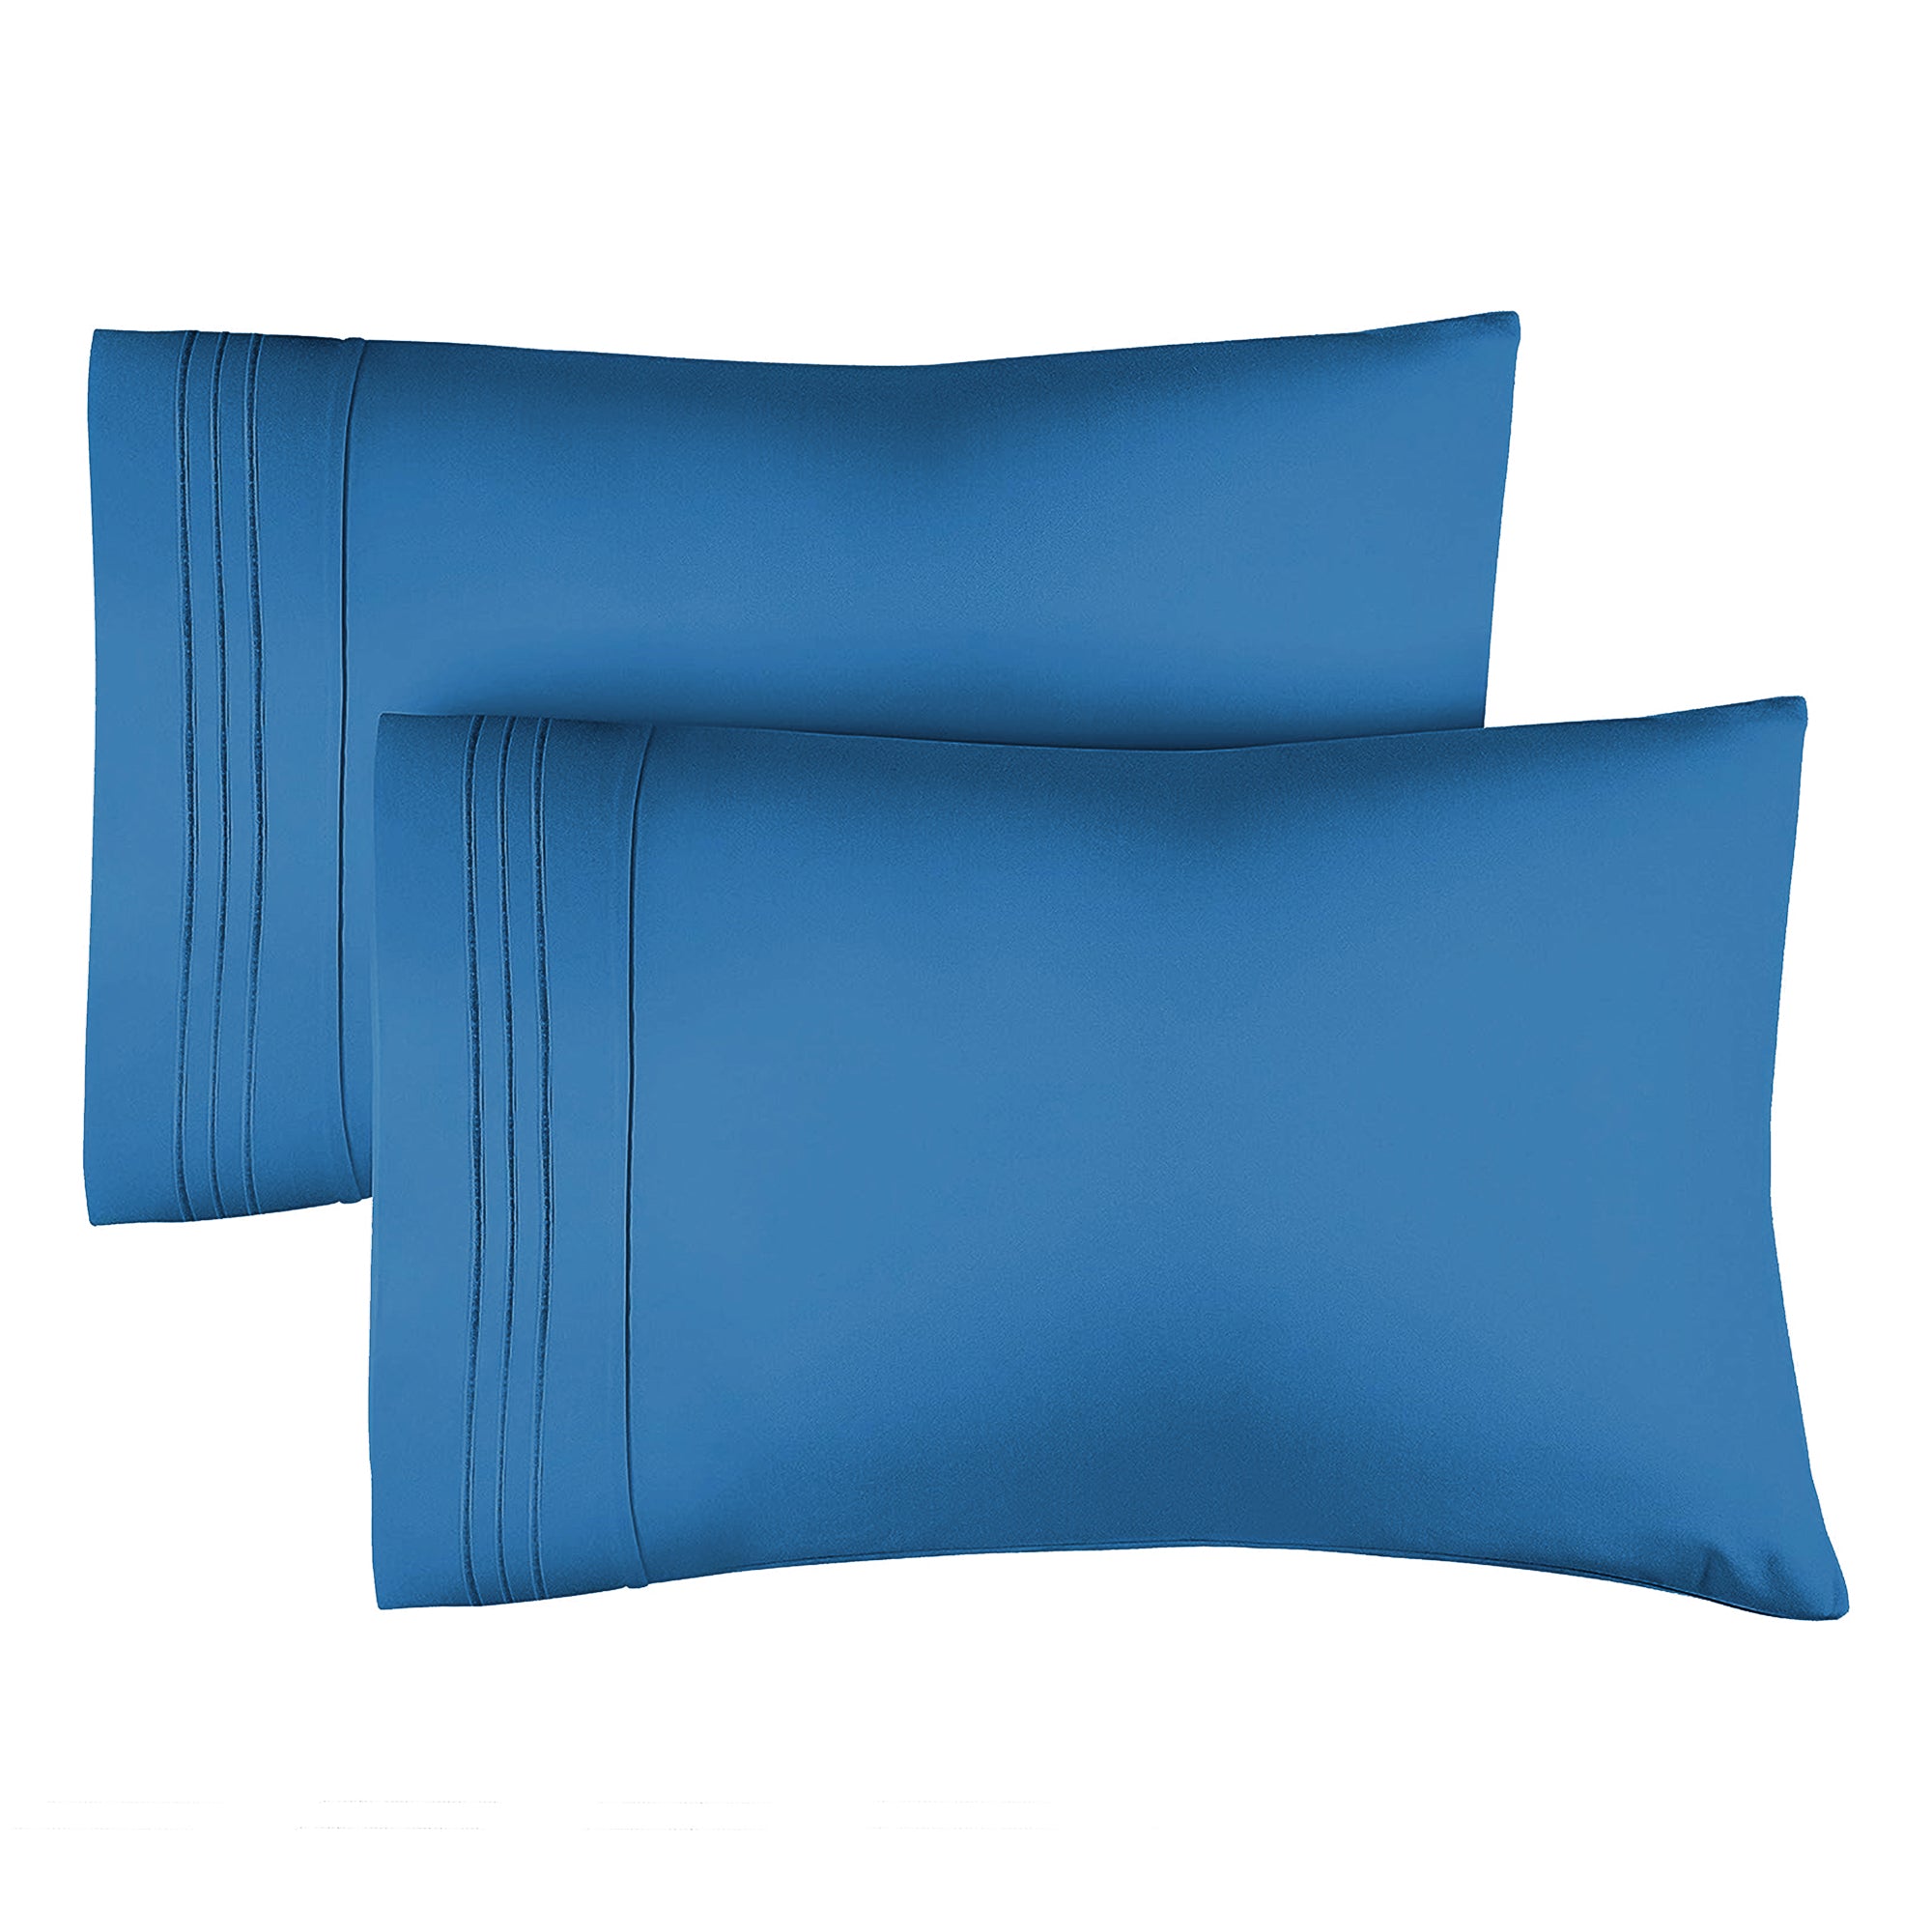 tes 2 Pillowcase Set - Royal Blue